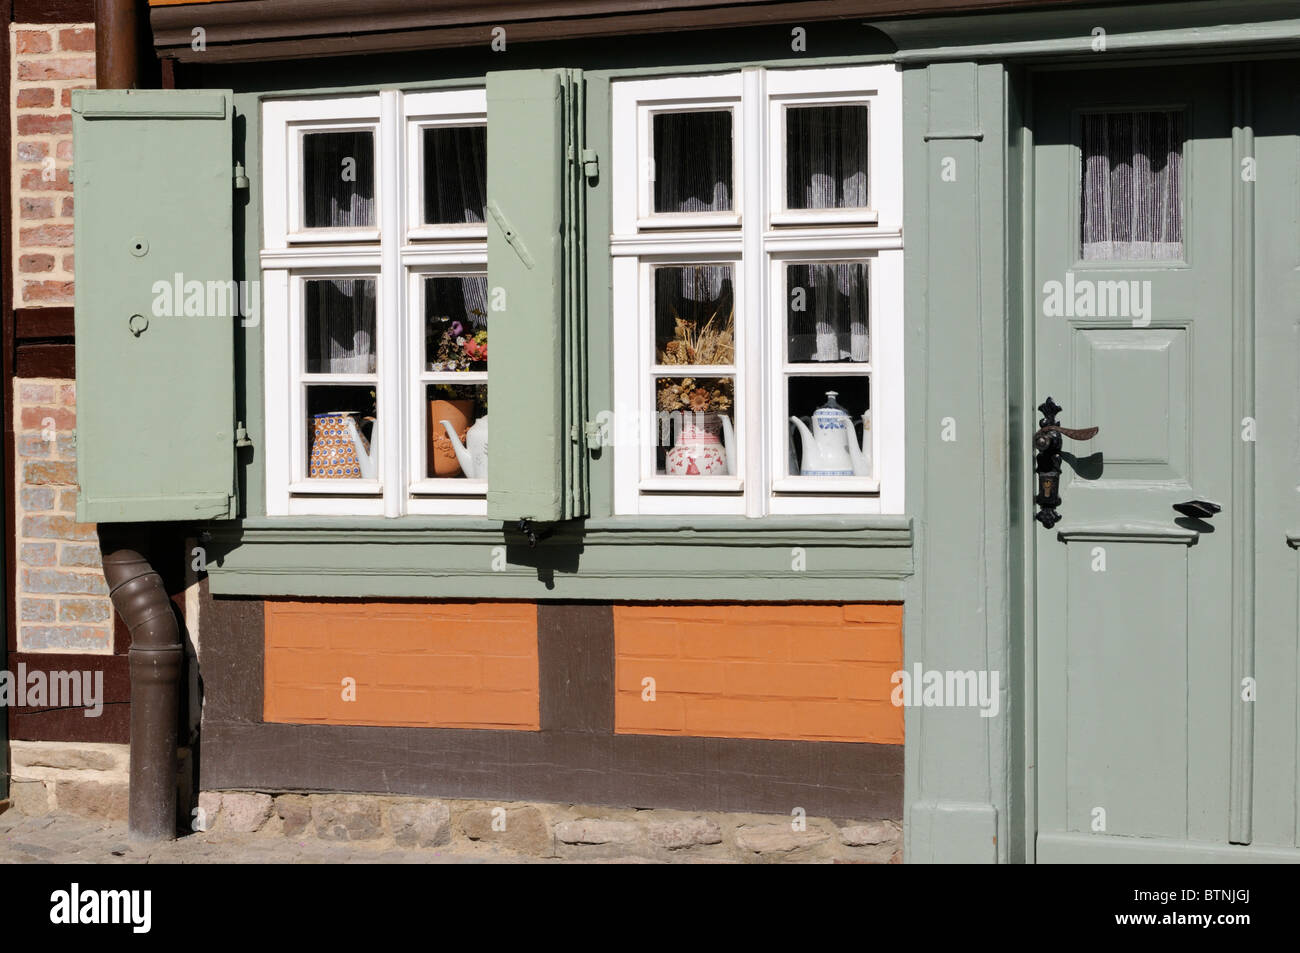 Das KLEINSTE HAUS habe 1792, Wernigerode, Deutschland. -Das kleinste Haus, gebaut im Jahre 1792, Wernigerode, Deutschland. Stockfoto